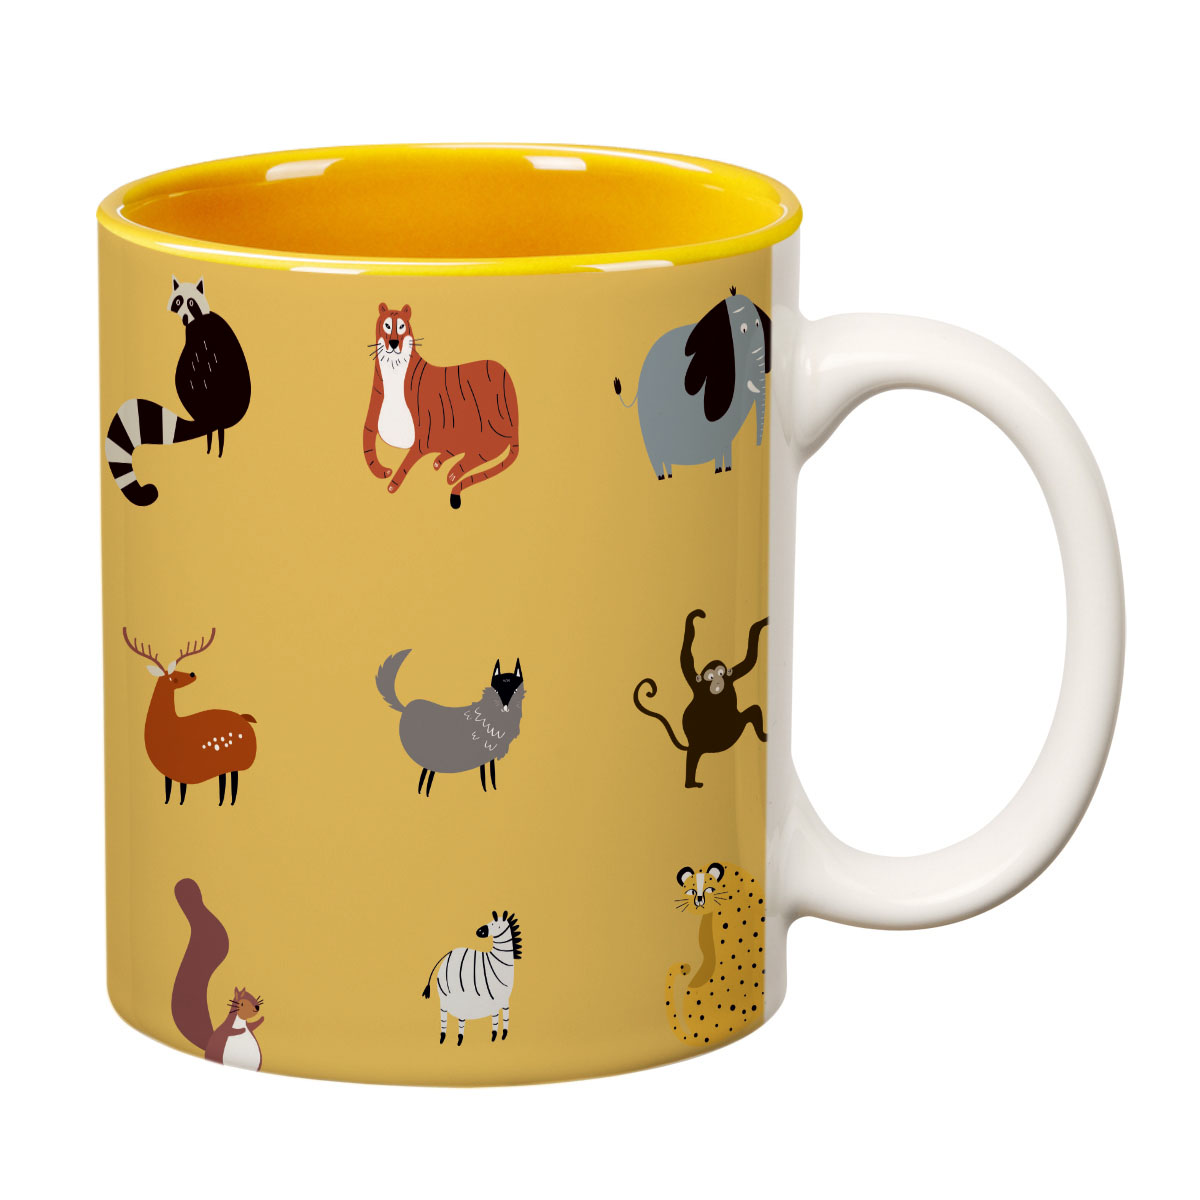 ORKA Coffee Mug Zoo Animal Theme 11 Oz   